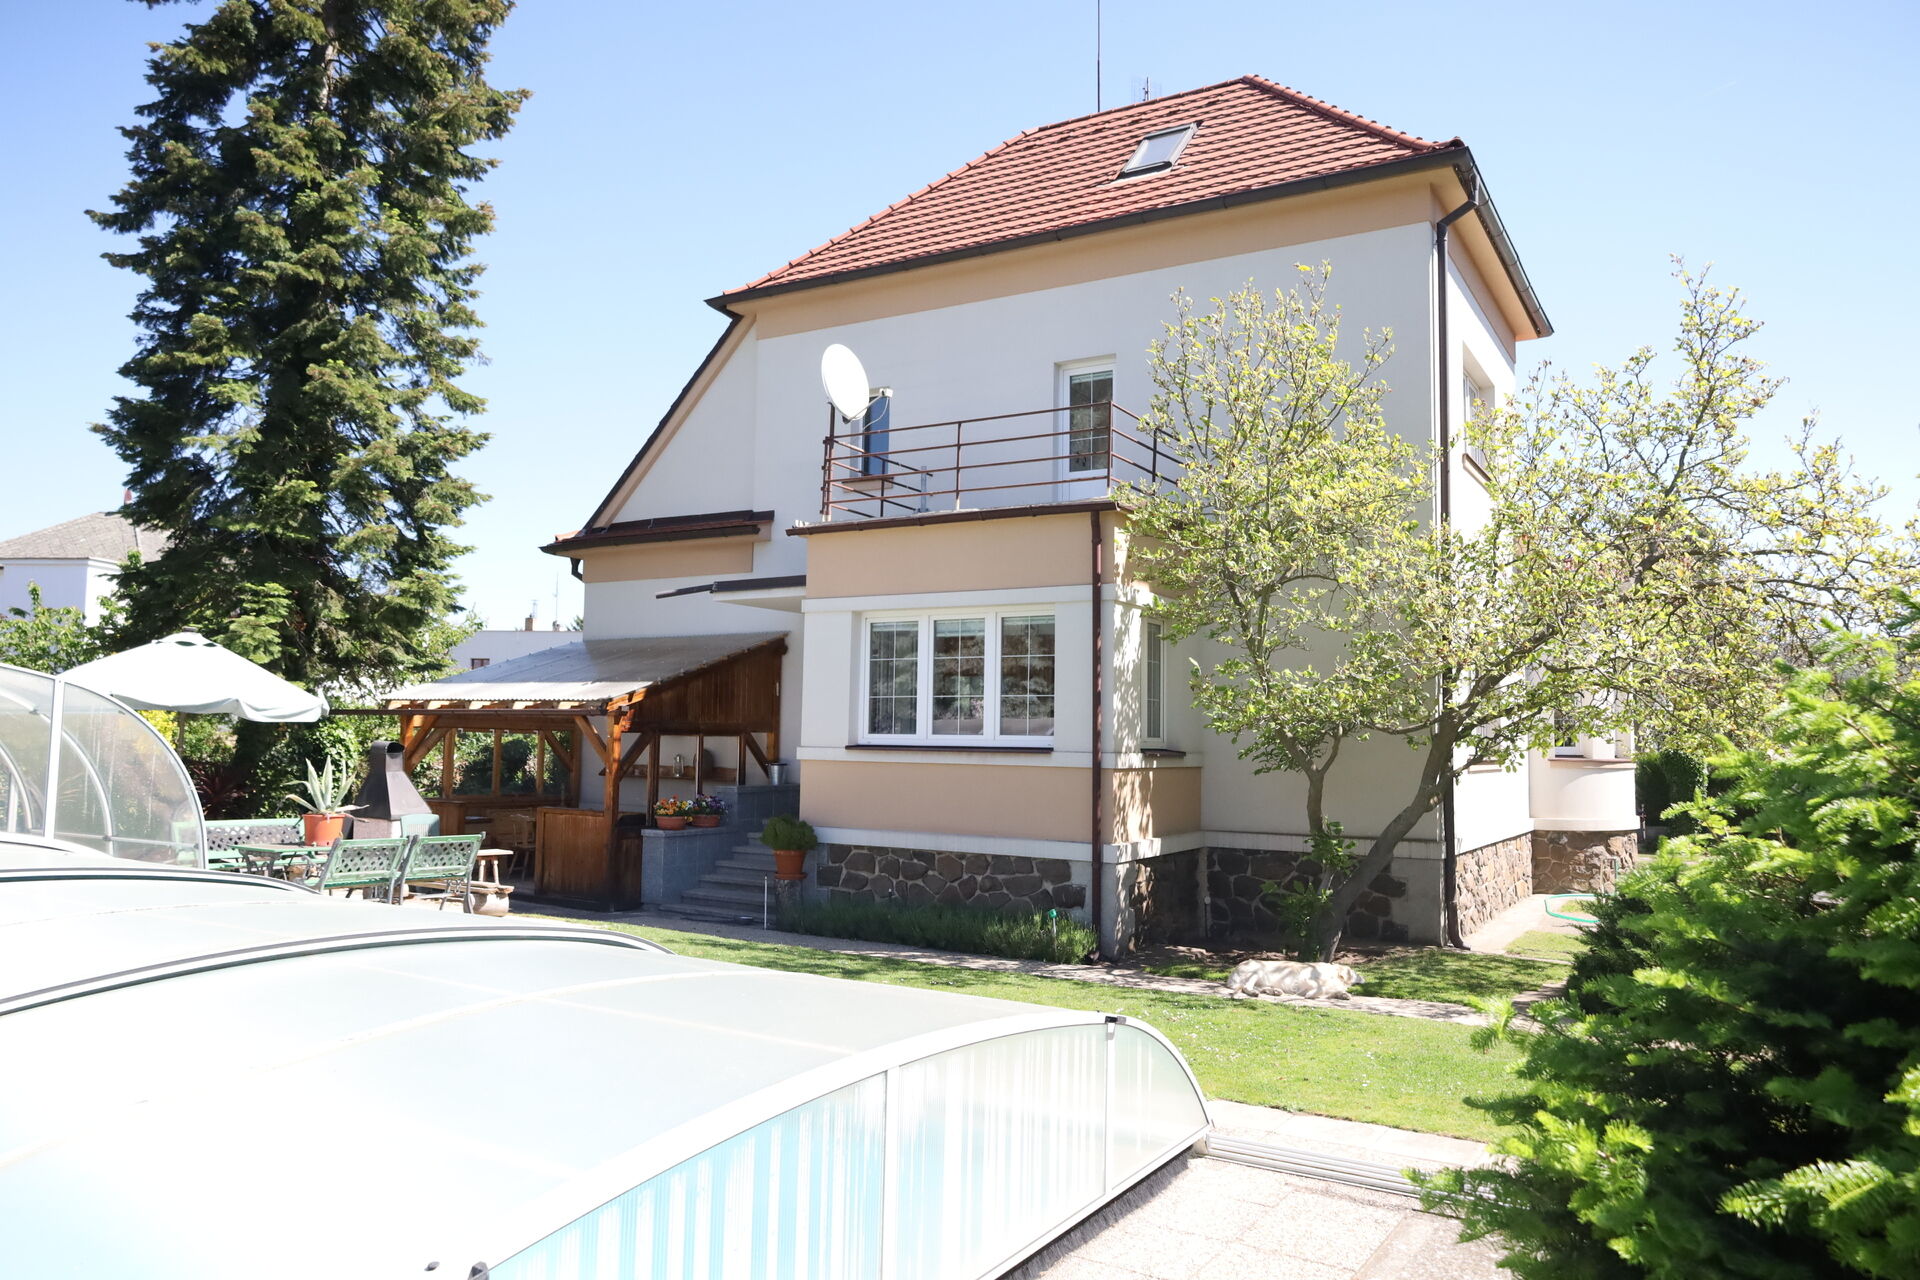 Prodej rodinné vily Praha 5 – Zbraslav s pozemkem 836 m2 v krásné lokalitě.